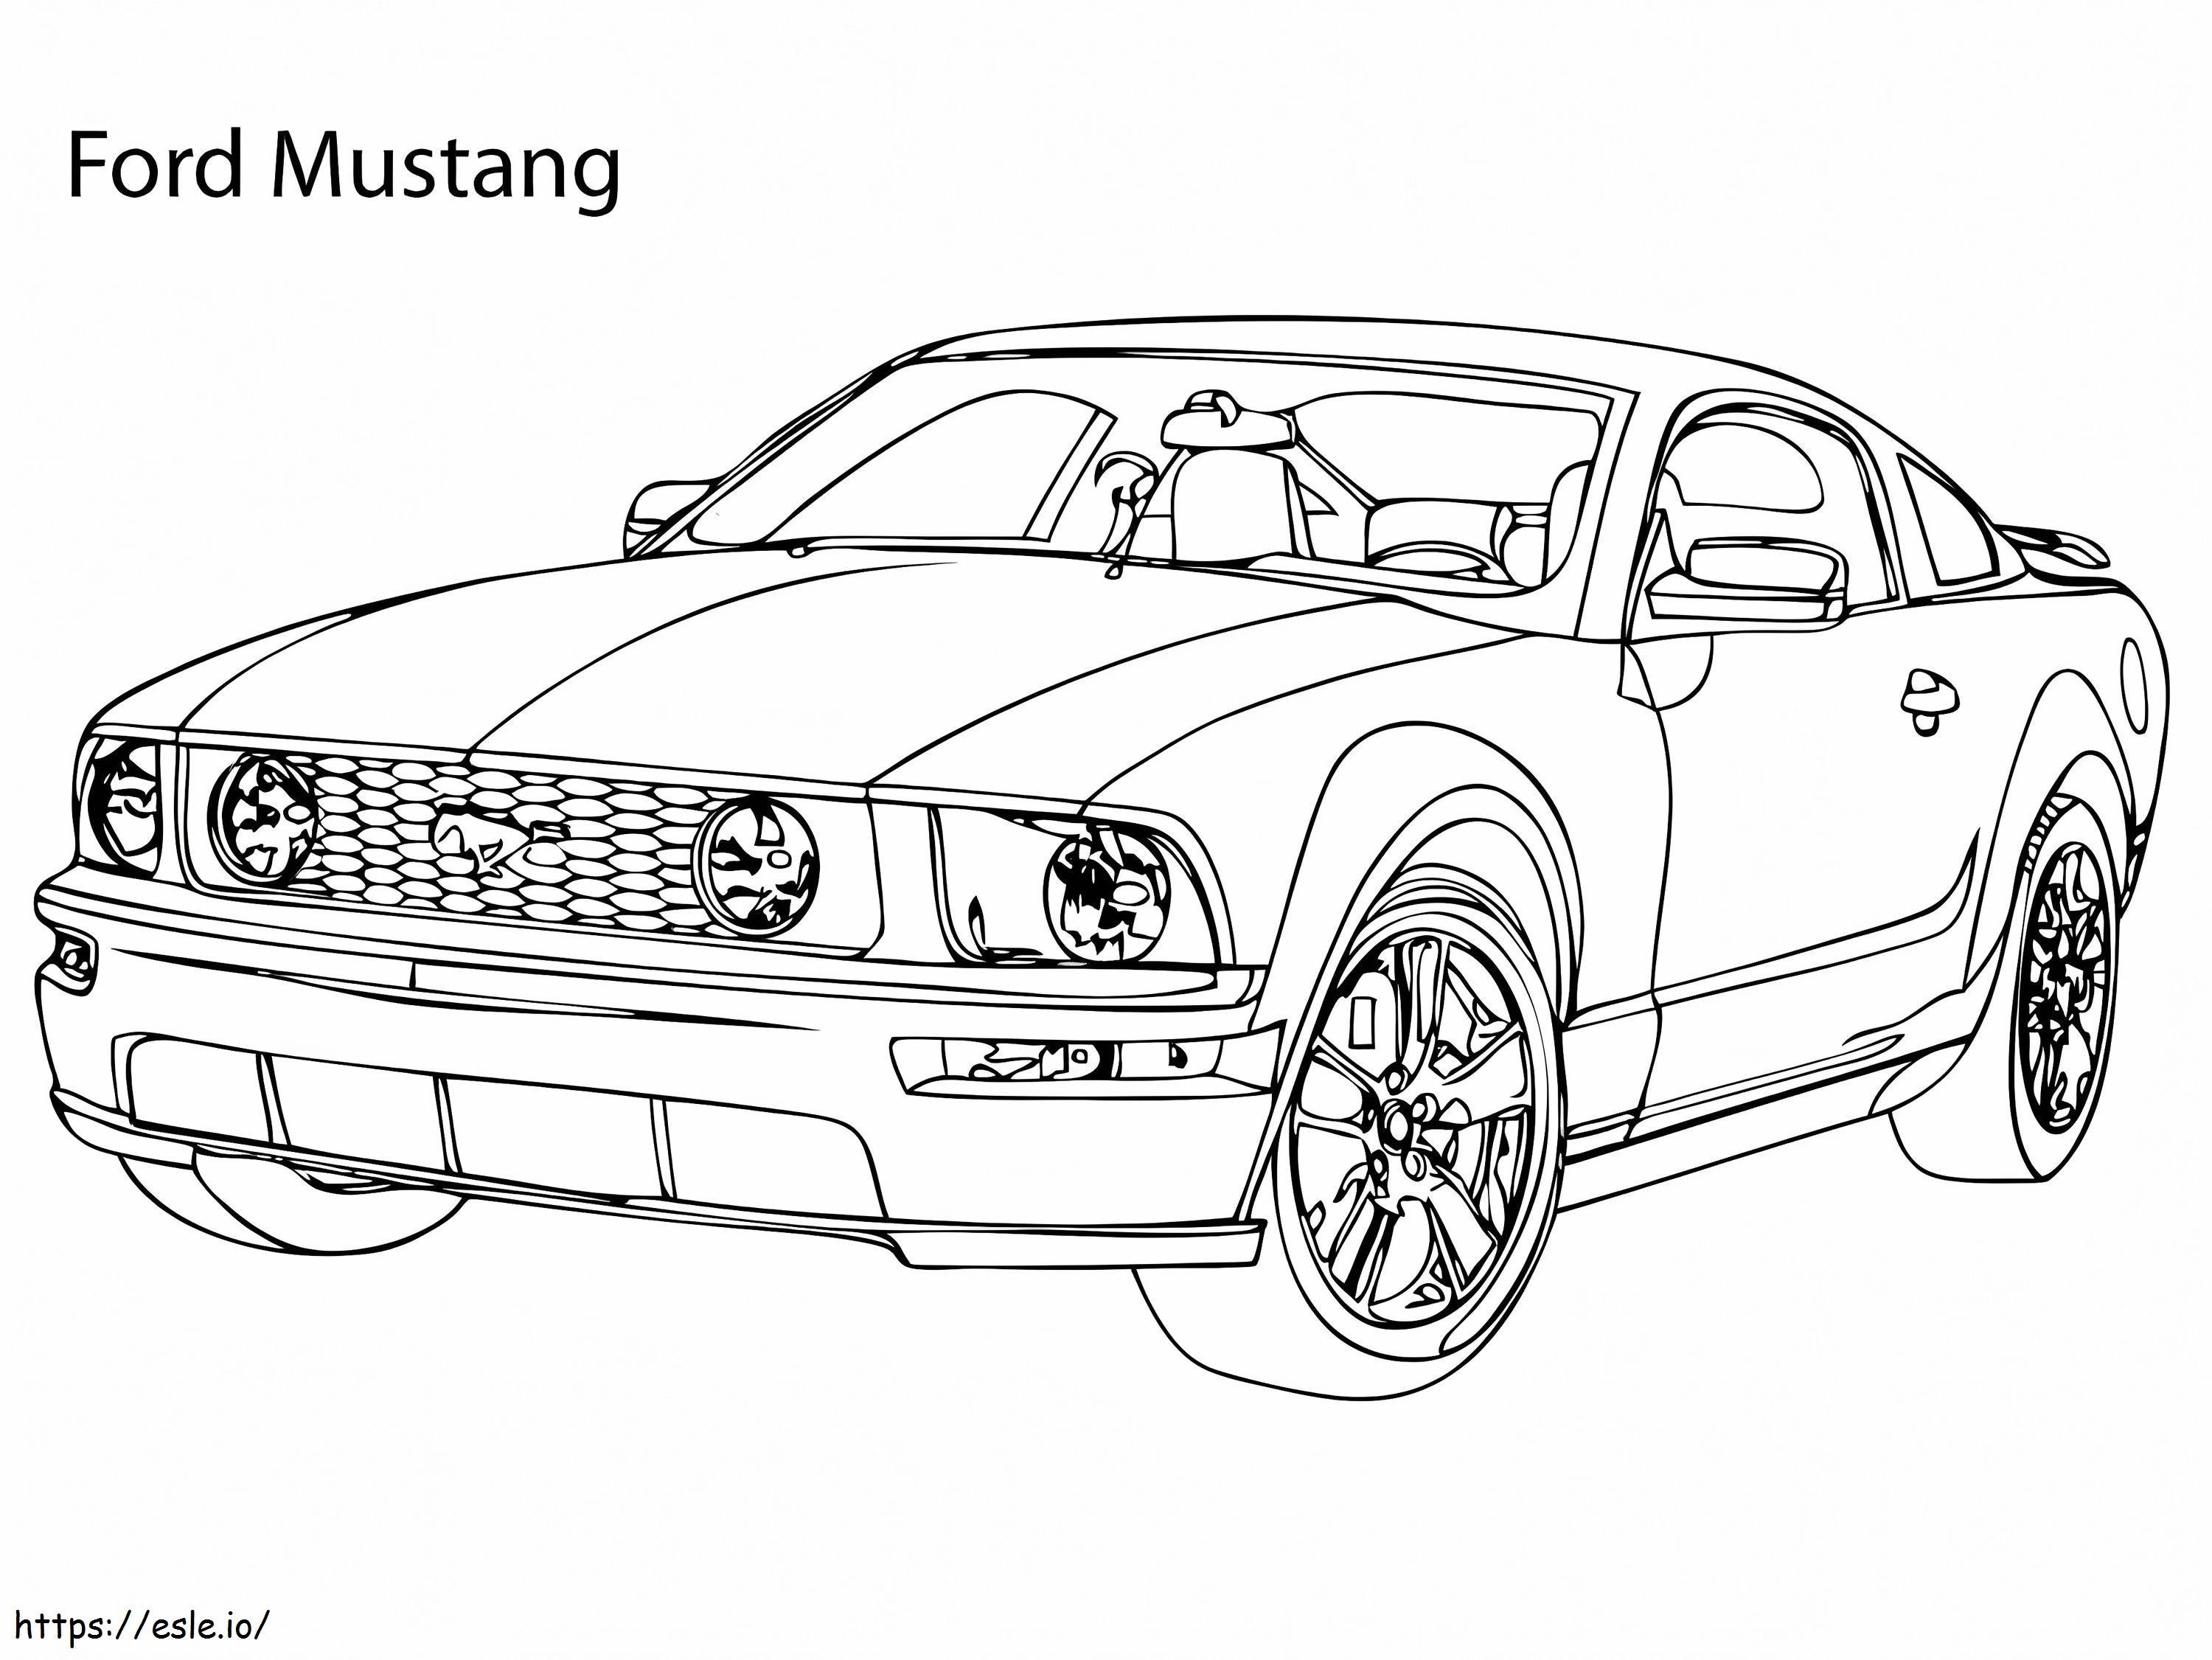 Supersamochód Ford Mustang kolorowanka